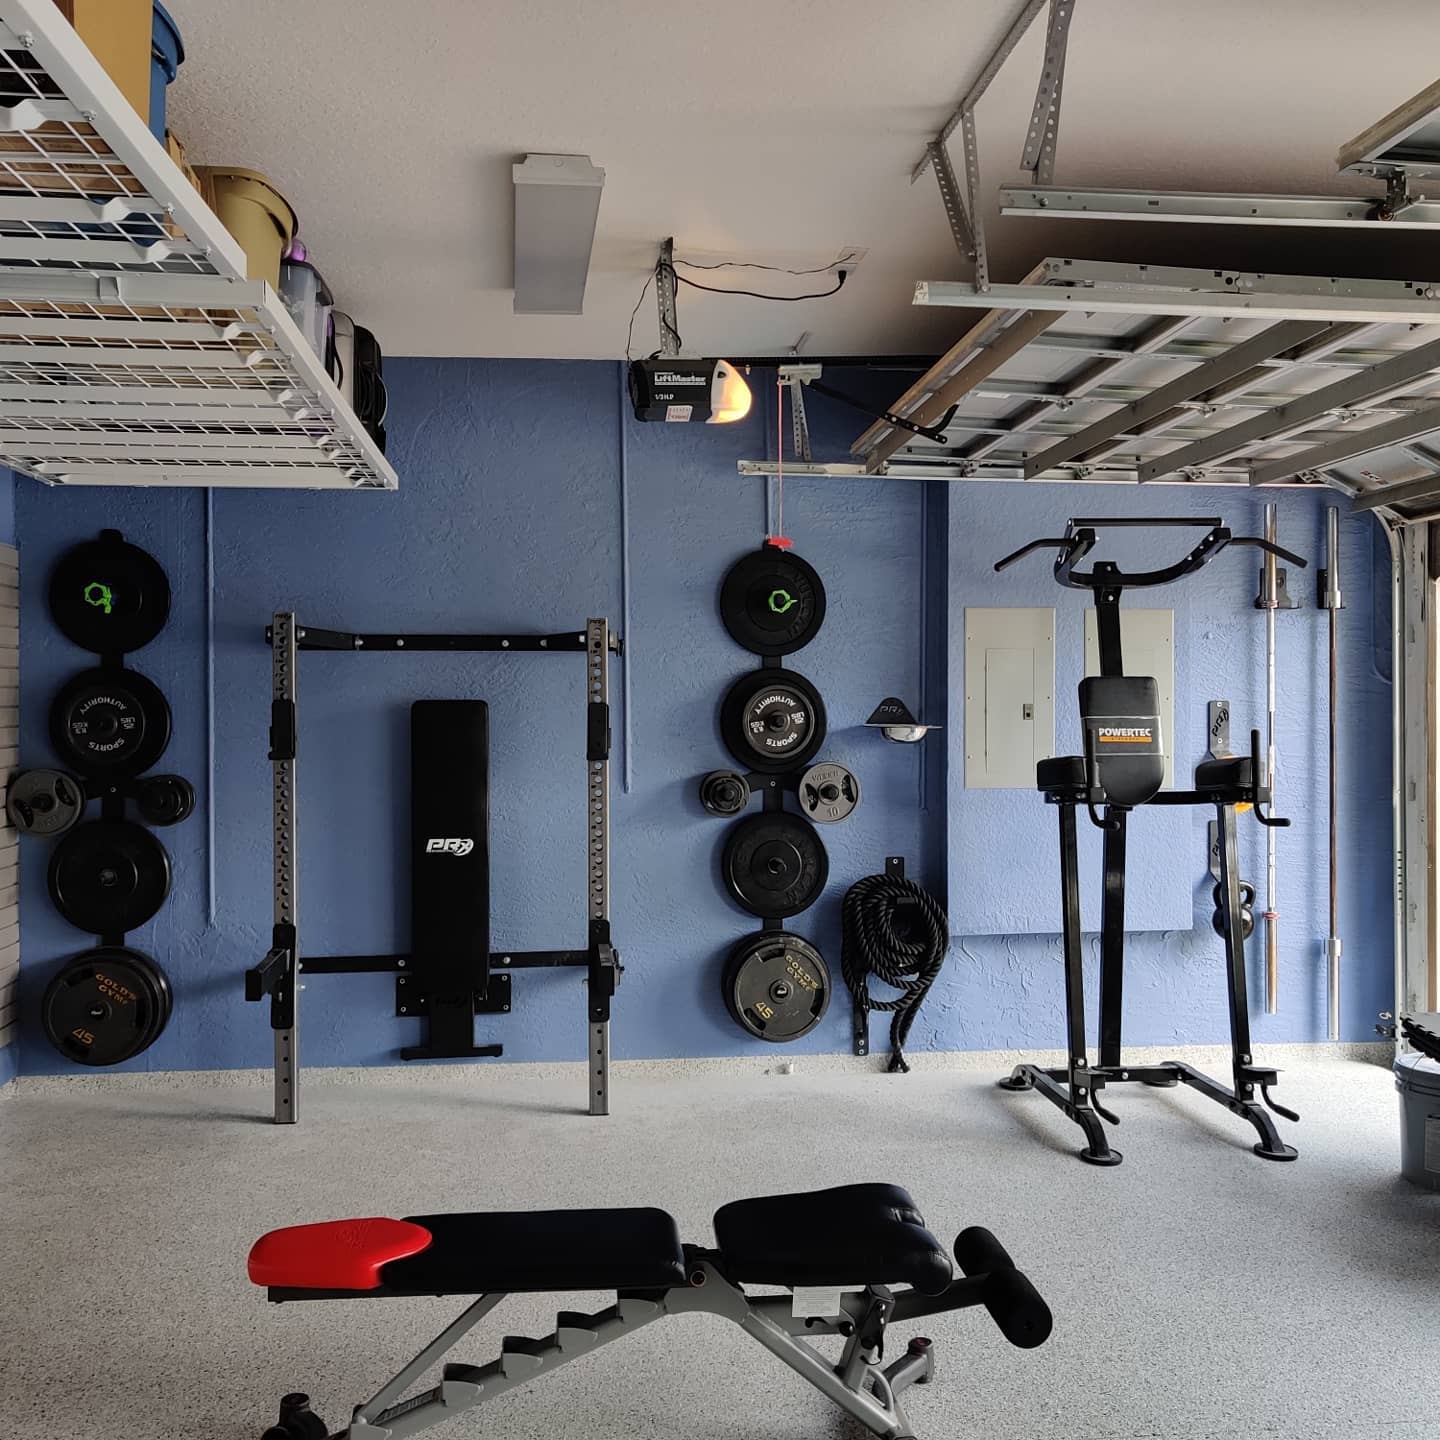 Garage, gym, concrete floor, heavy weights, bench press